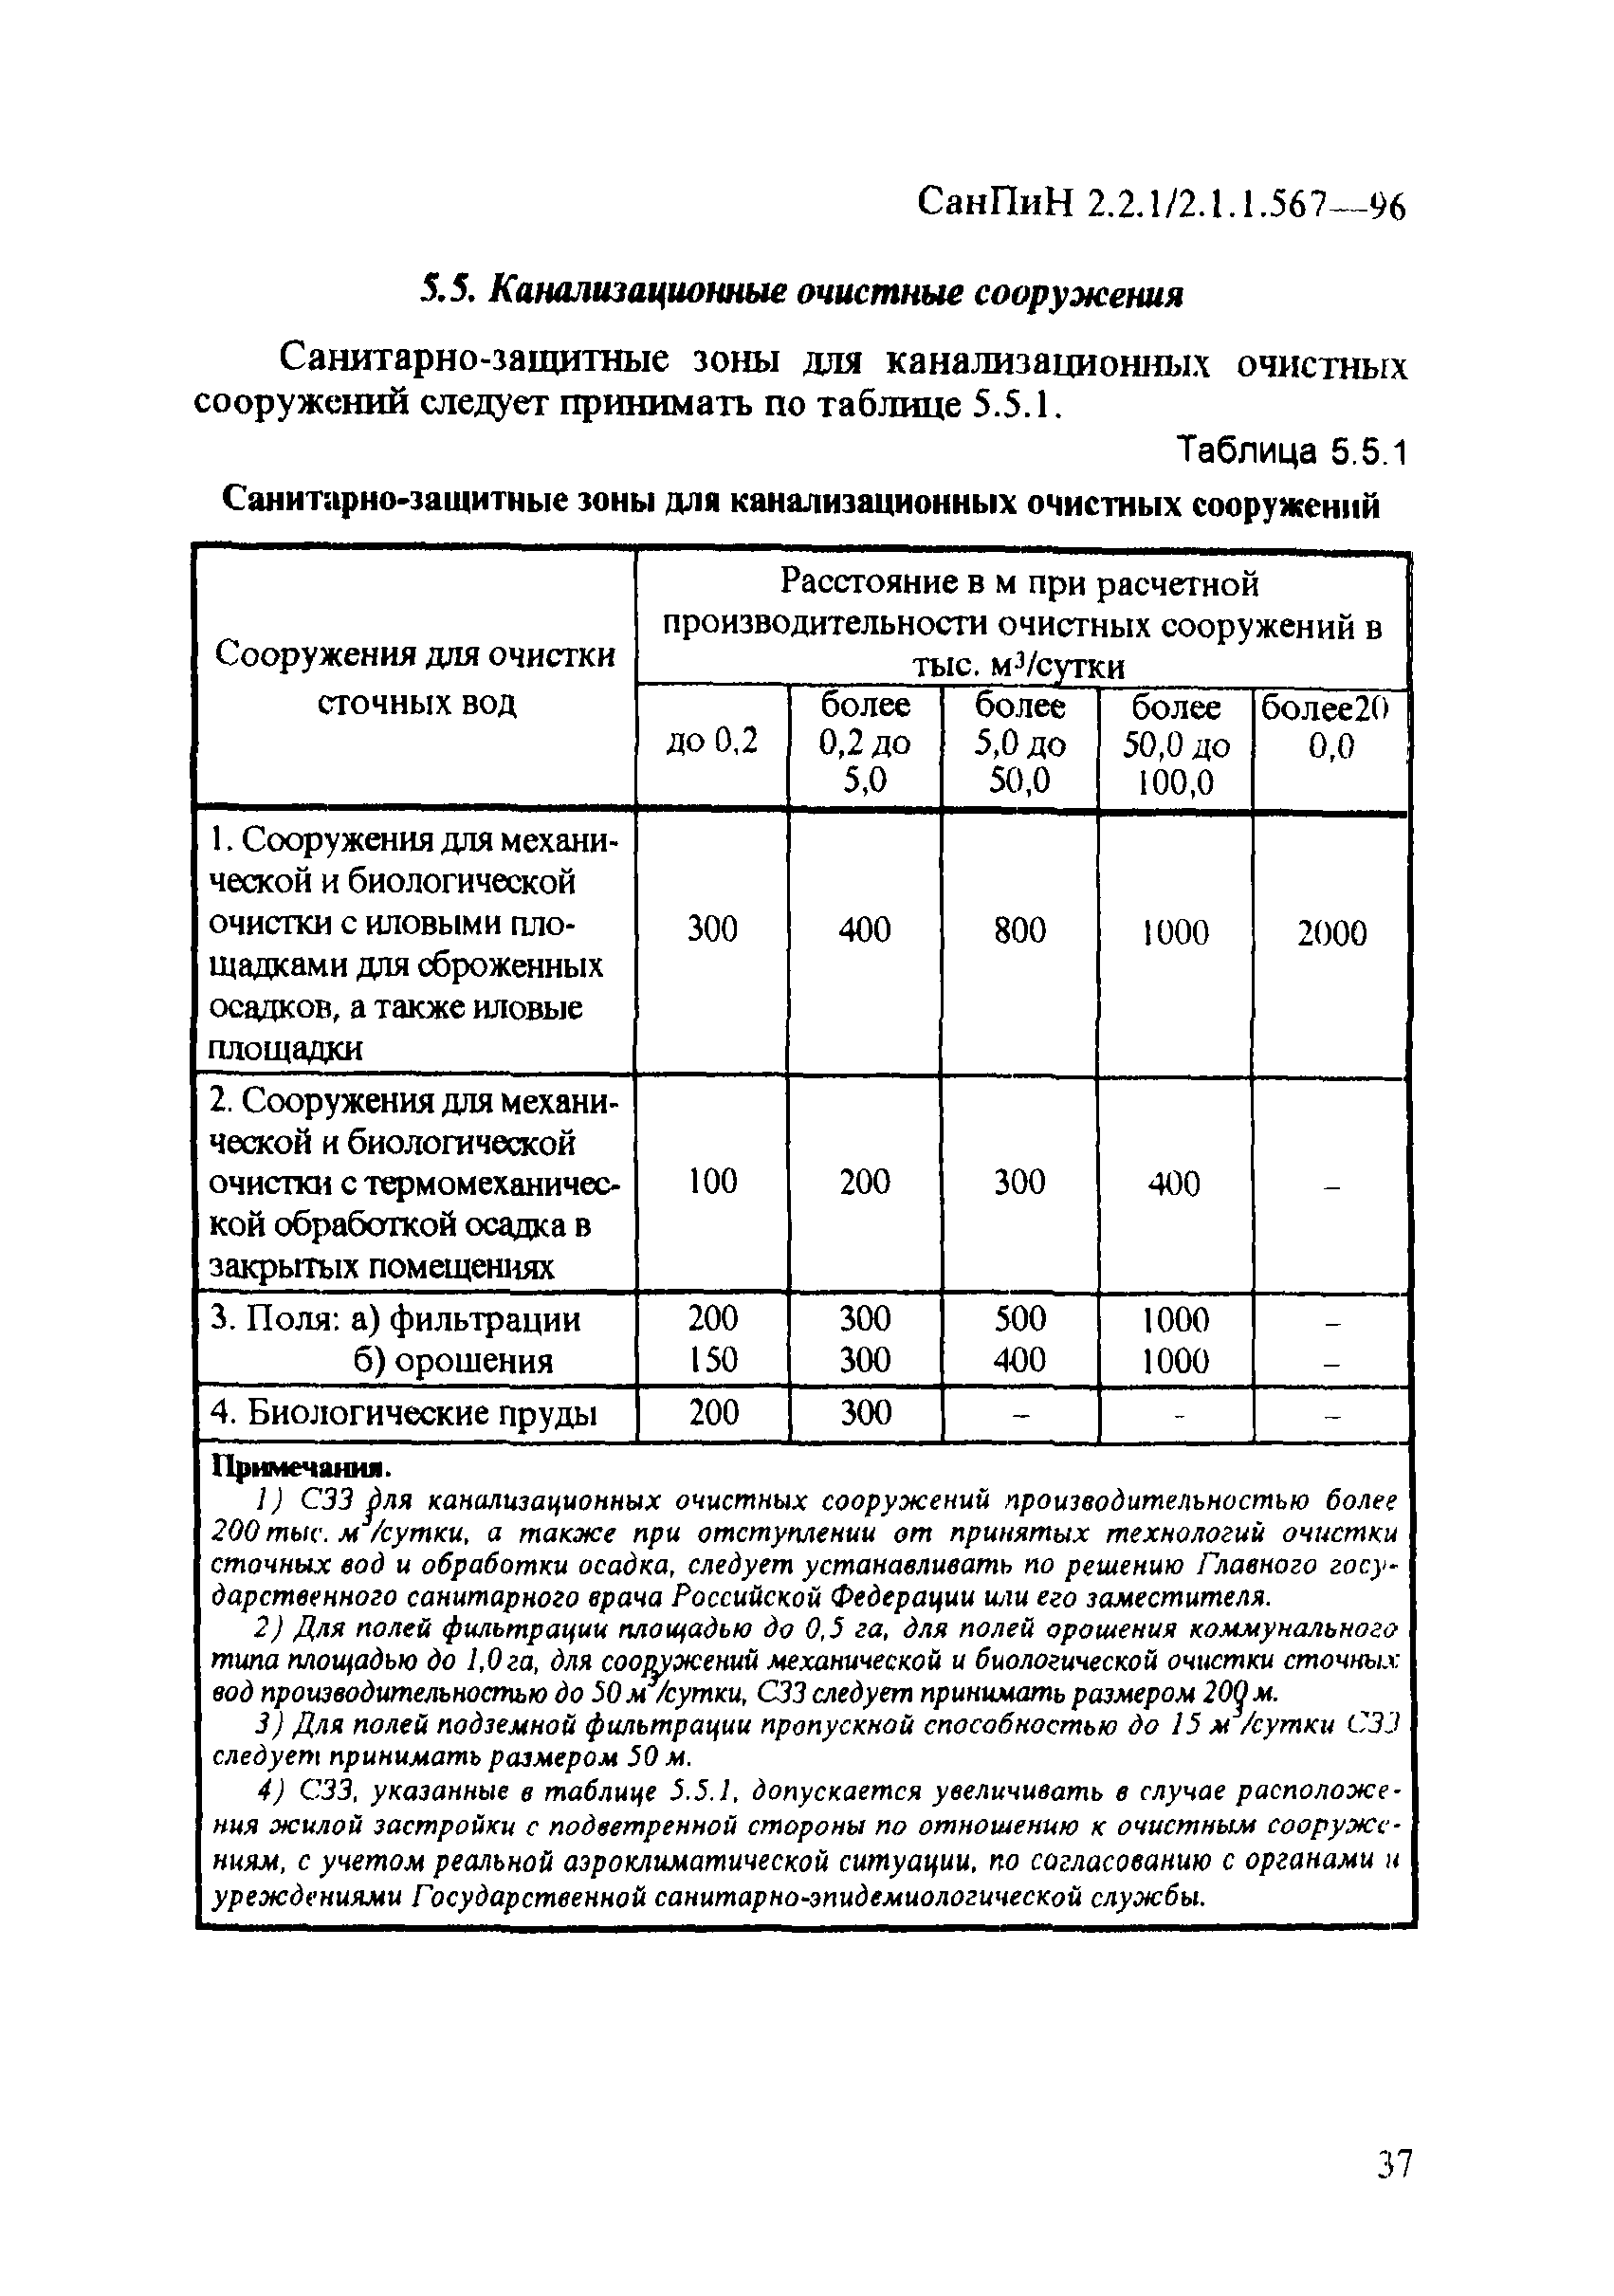 СанПиН 2.2.1/2.1.1.567-96